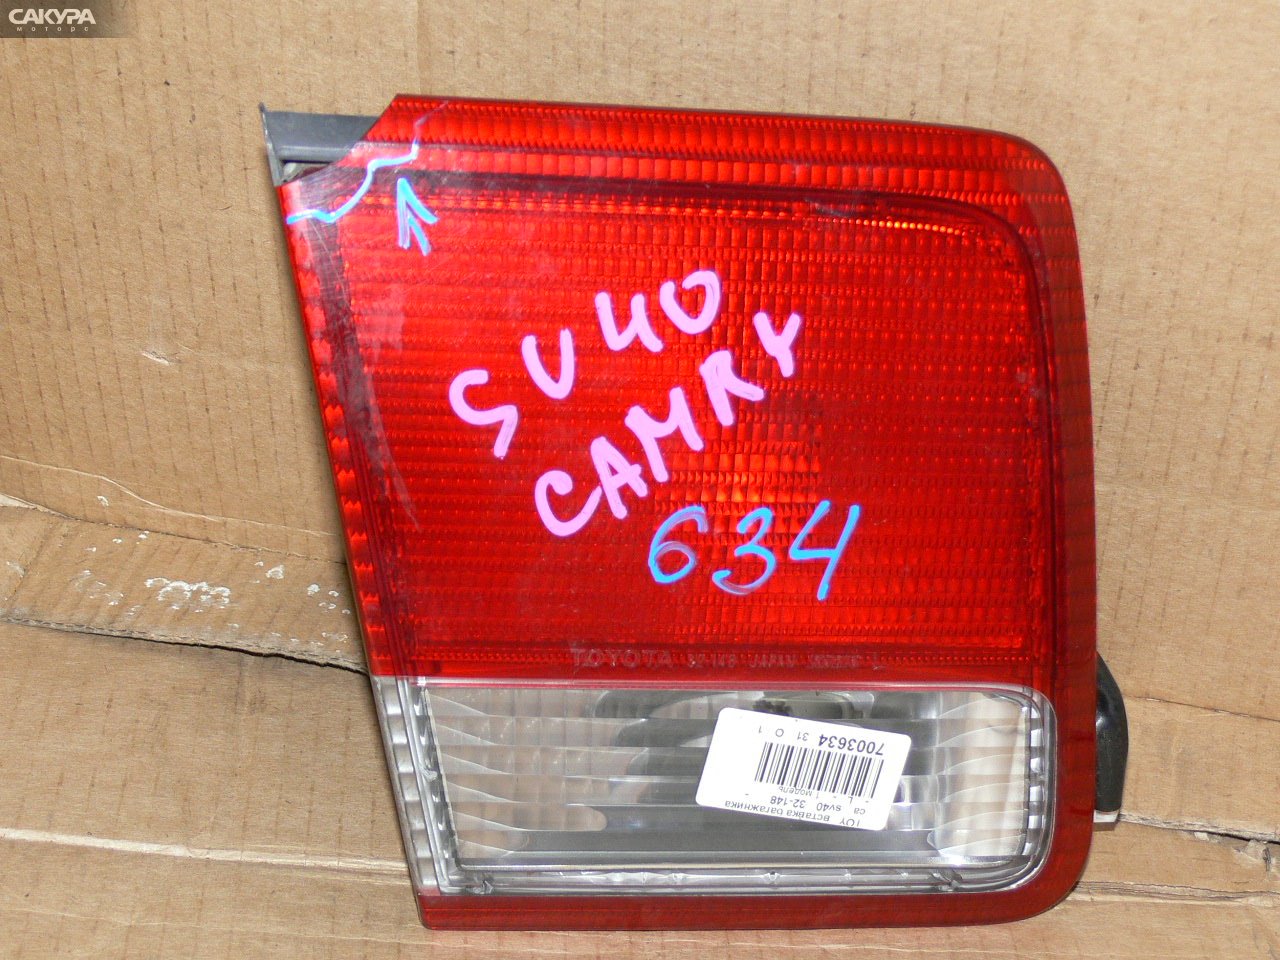 Фонарь вставка багажника левый Toyota Camry SV40 4S-FE 32-148: купить в Сакура Иркутск.